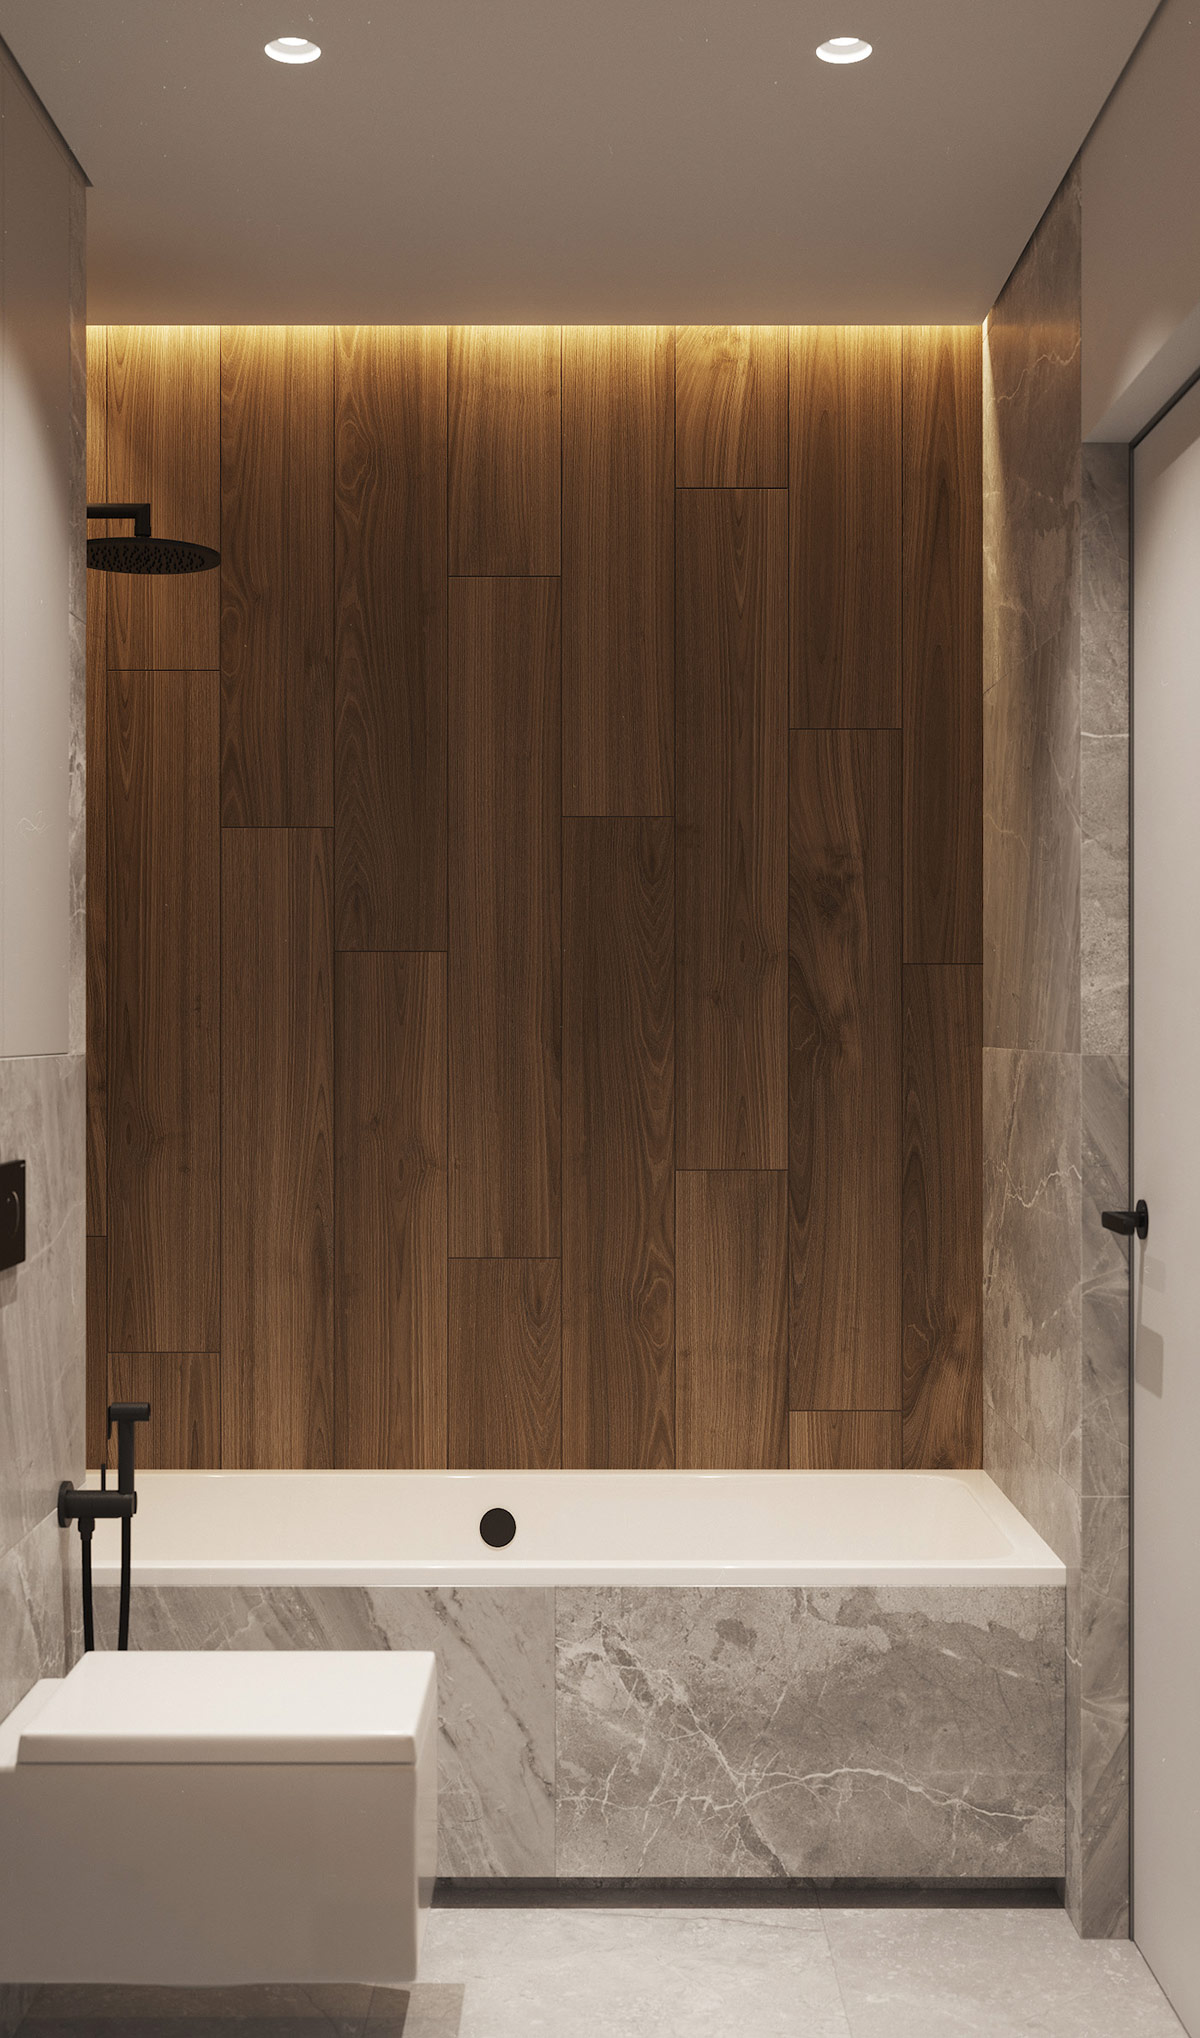 hình ảnh khu vực bồn tắm với mảng tường ốp gỗ kết hợp đèn LED vàng